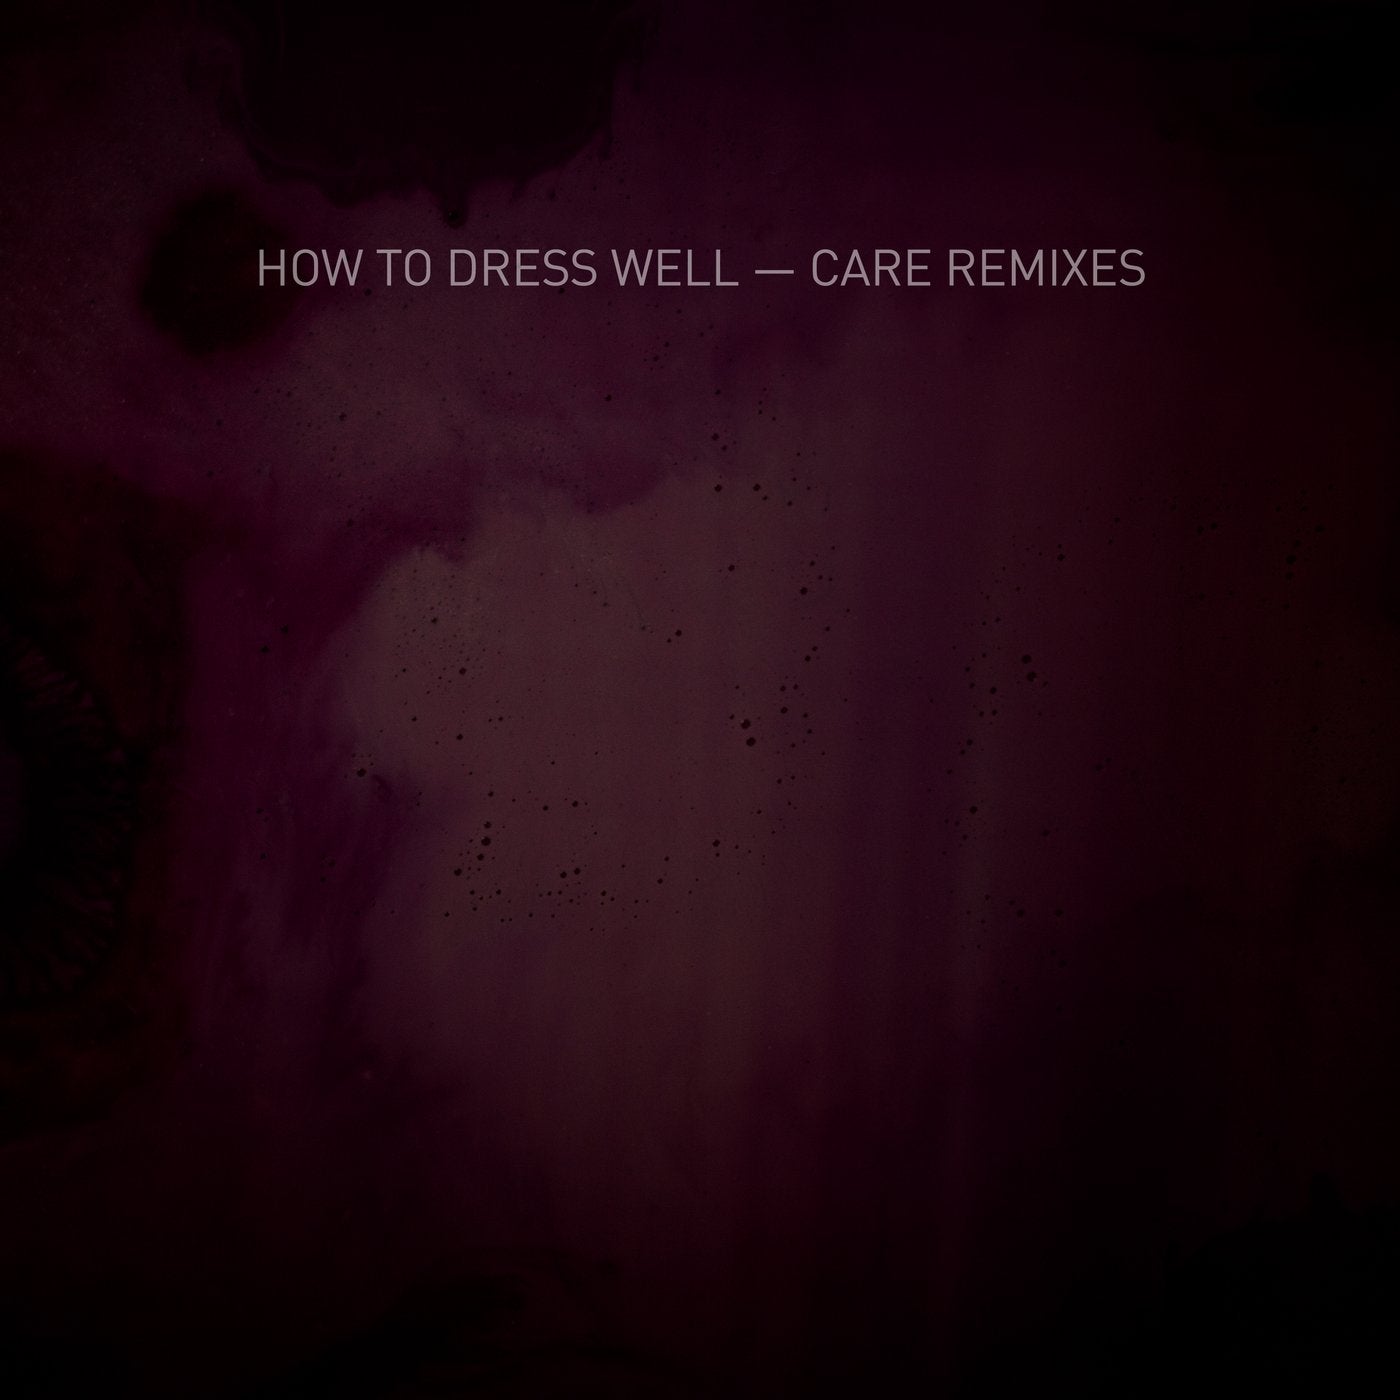 Care - Remixes